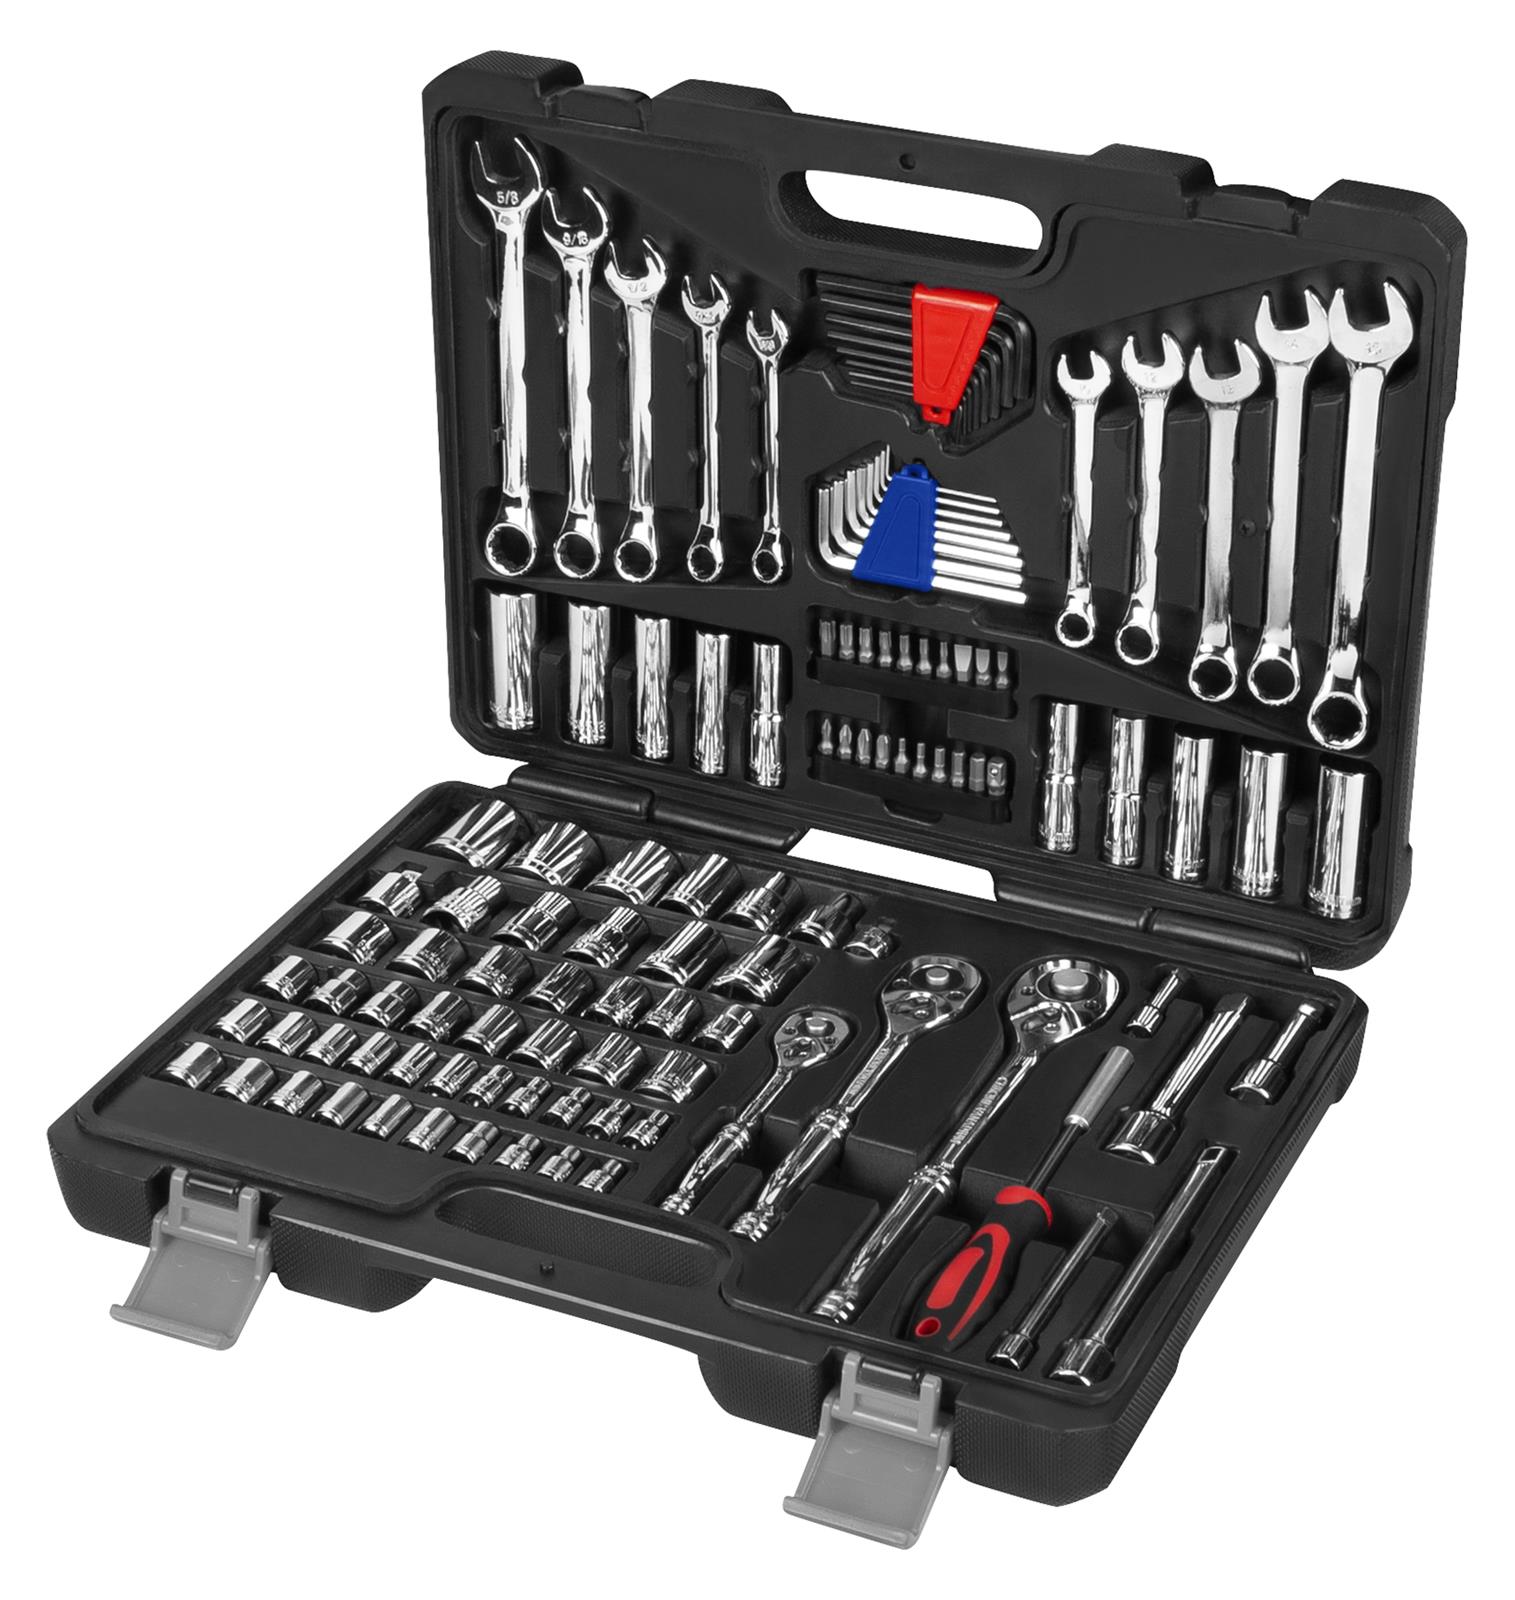 Performance tool. Набор инструментов FPV. JOBSMART 312 piece Mechanic Tool Set. Спец приспособления и инструменты механика.